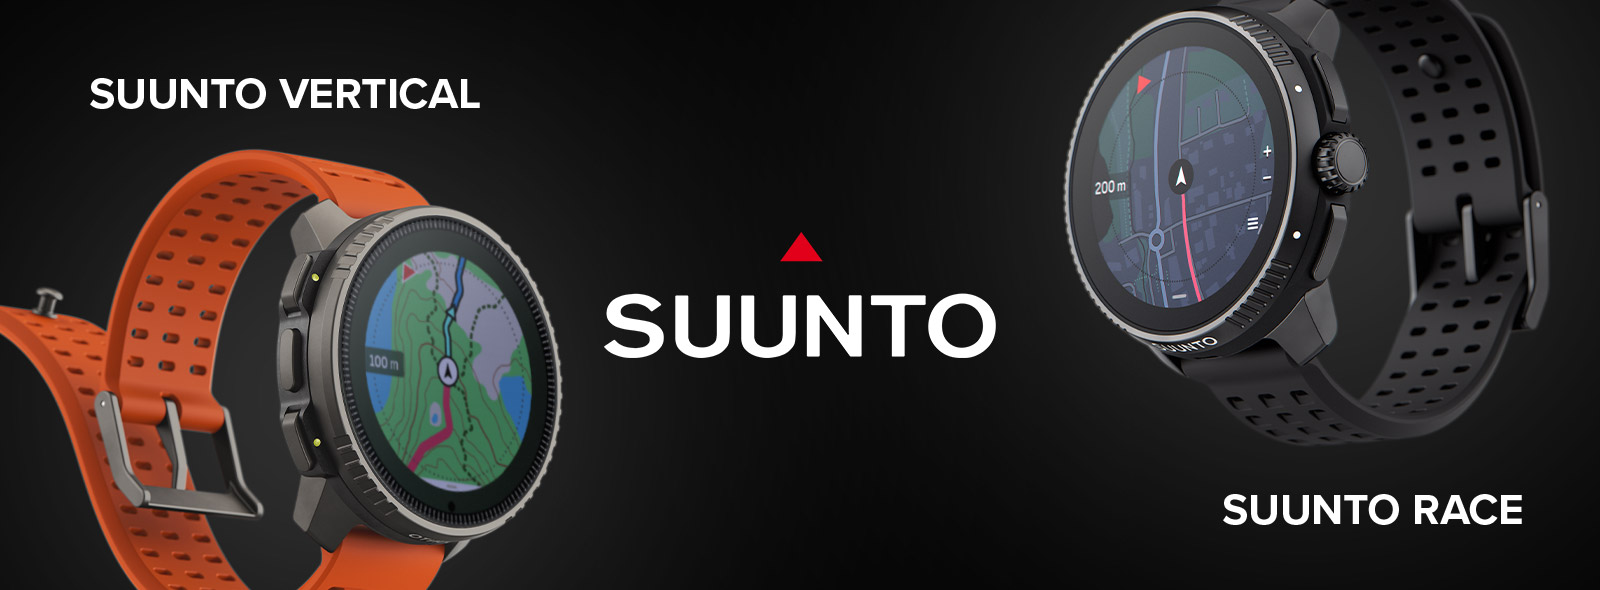 Porównanie Suunto Race i Suunto Vertical — który smartwatch wybrać? |  Zegarownia.pl Blog